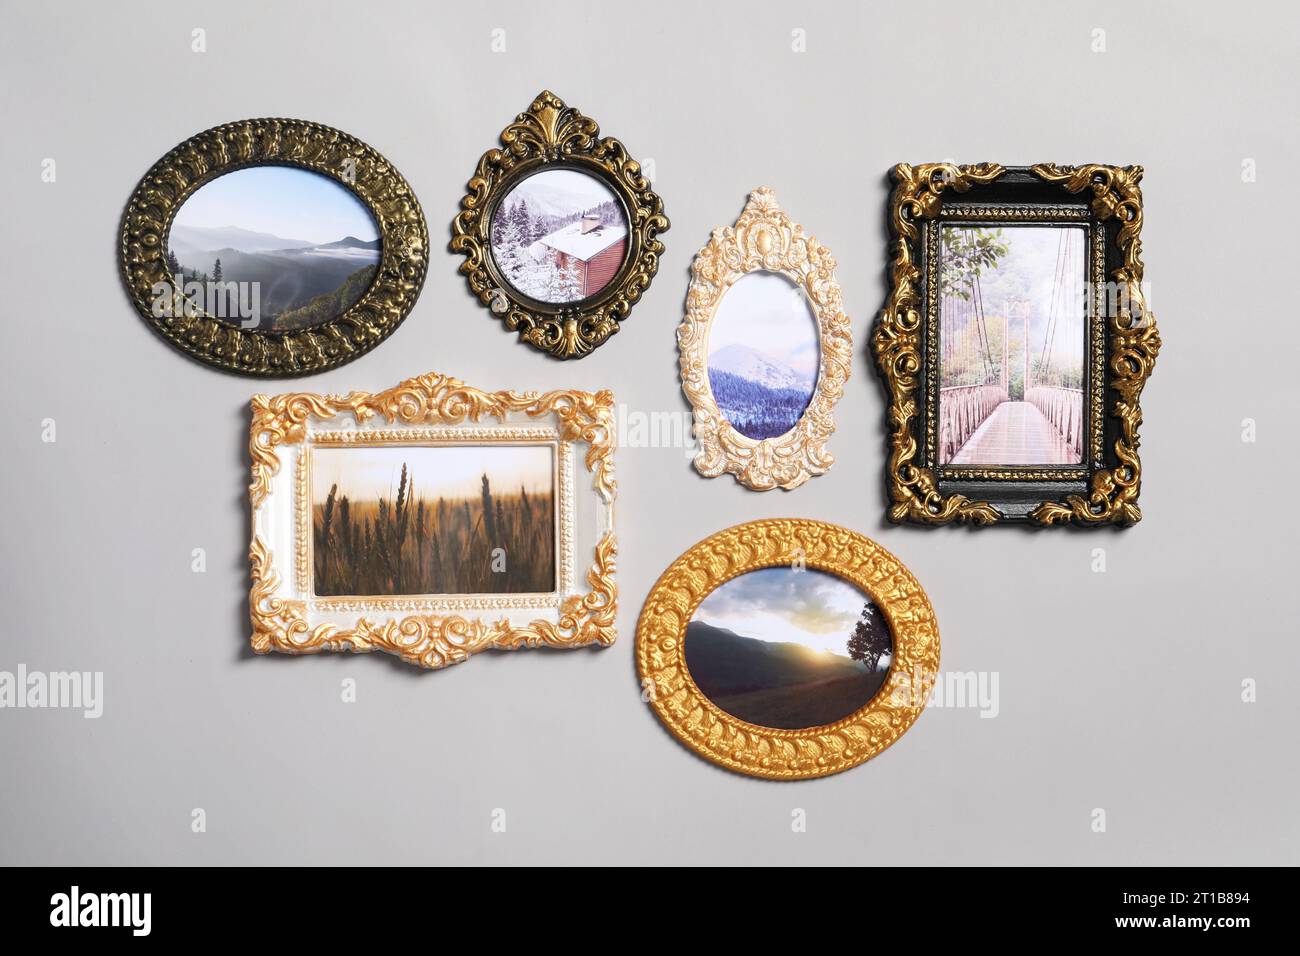 Vintage-Rahmen mit wunderschönen Fotos von Landschaften, die an einer hellgrauen Wand hängen Stockfoto